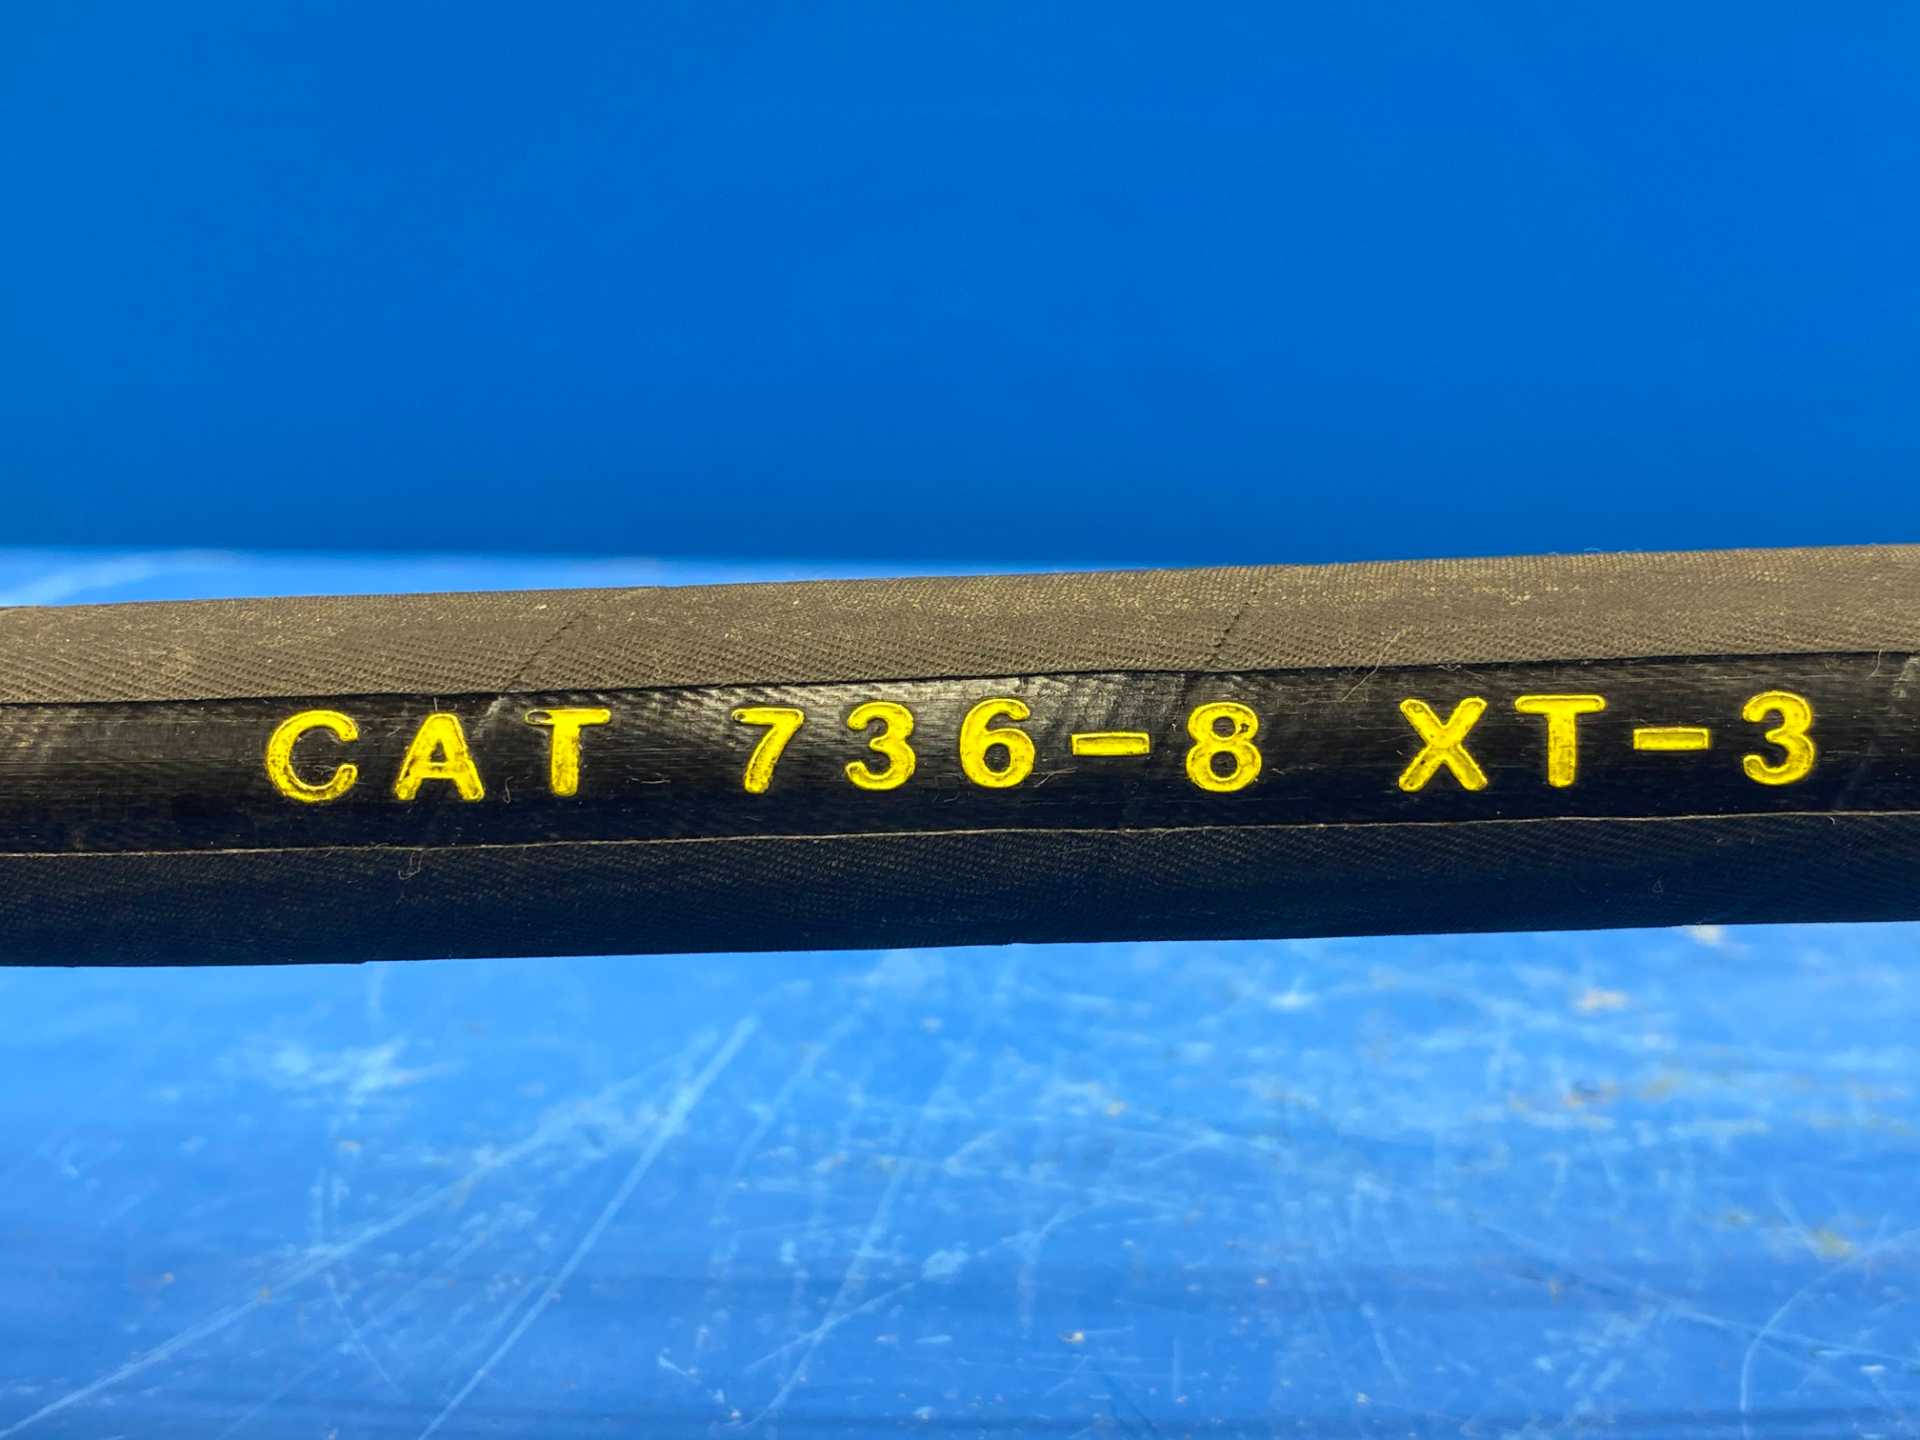 CAT NEW 736-8 / XT-3 ES165-0017 (1/2") I.D. X 27.5" 4000PSI